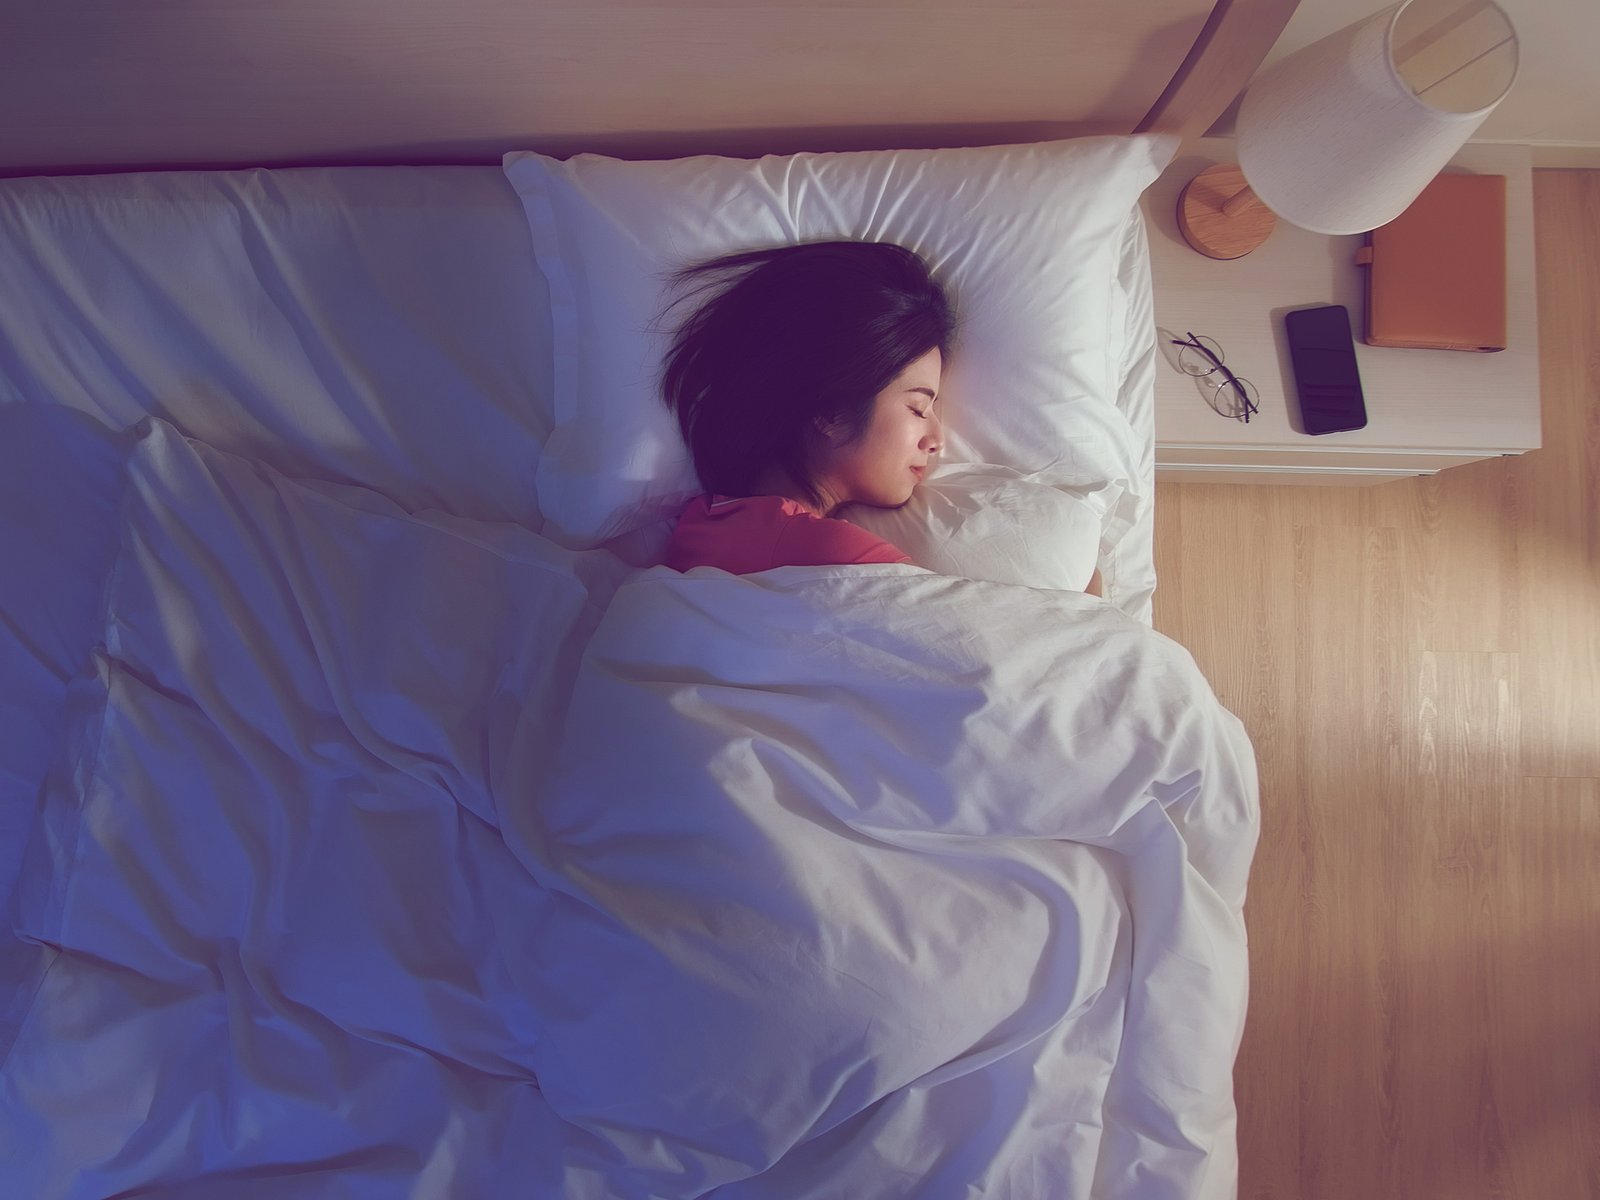 Kopfkissen-Test: 4 Kissen sorgen für höchsten Schlafkomfort